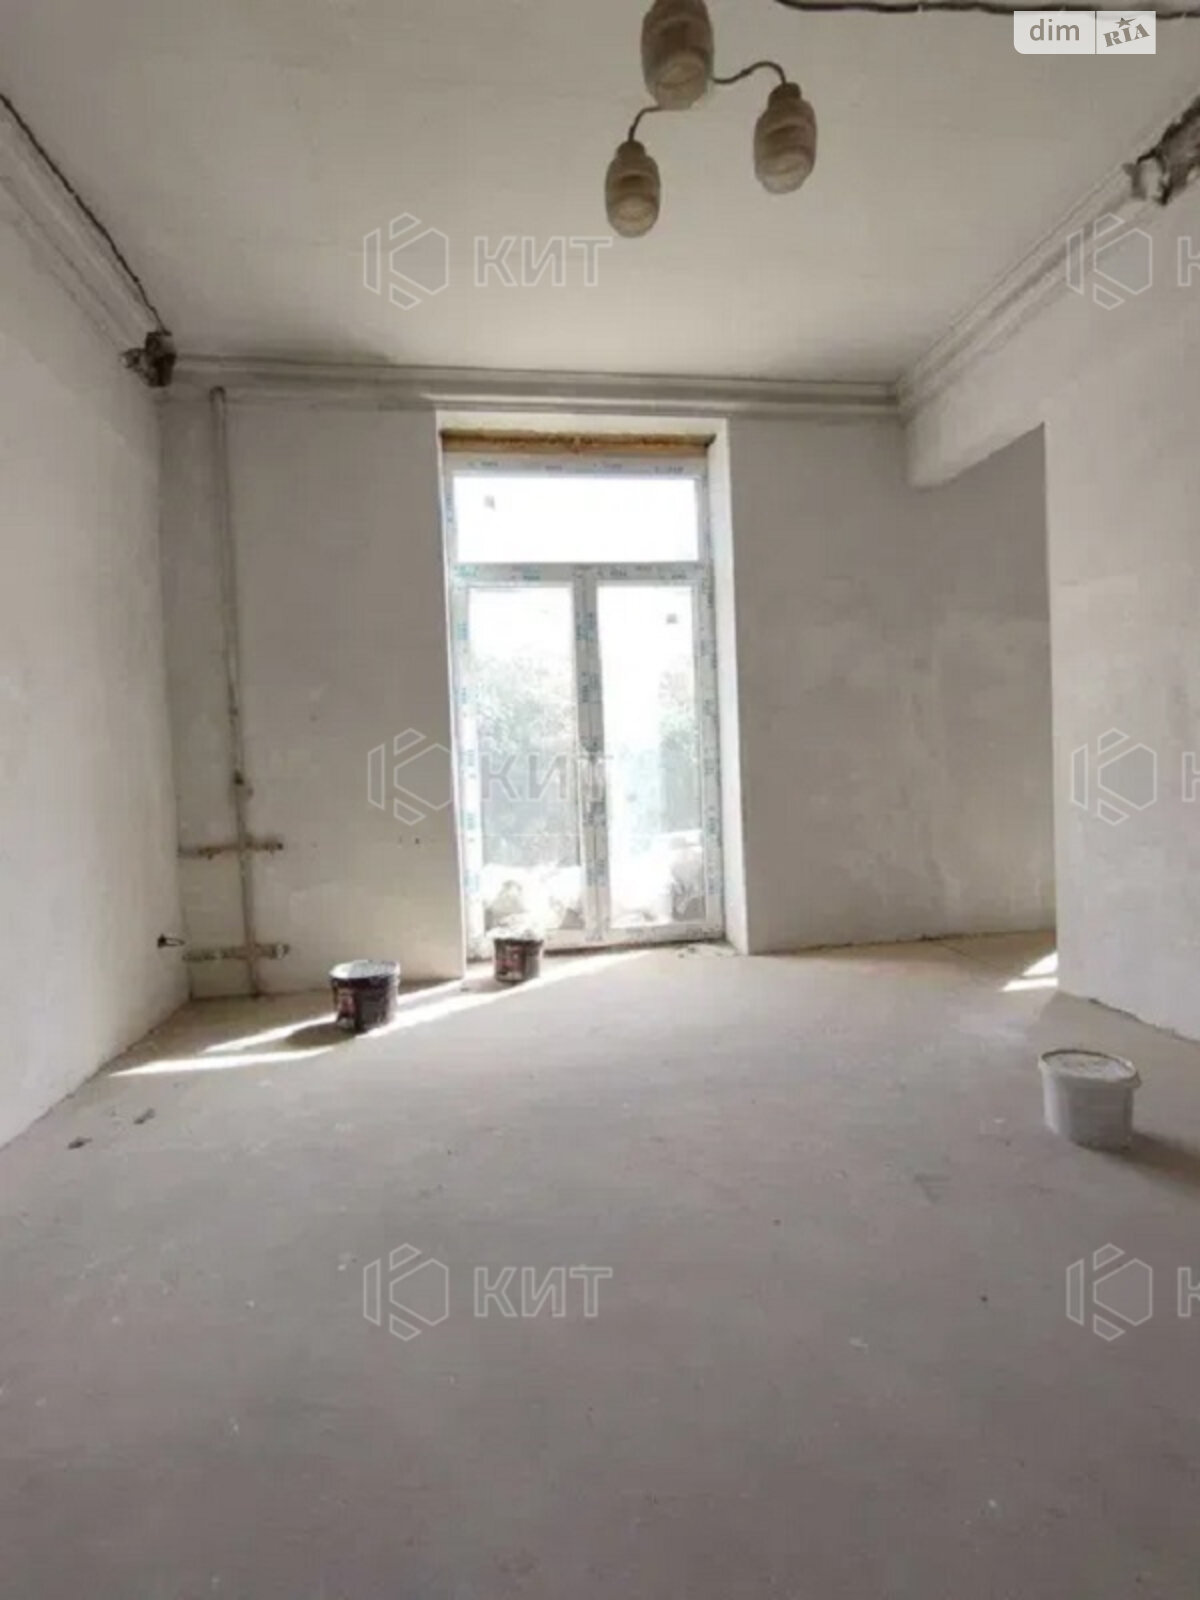 Продажа однокомнатной квартиры в Харькове, на ул. Молочная 18, район Центр фото 1